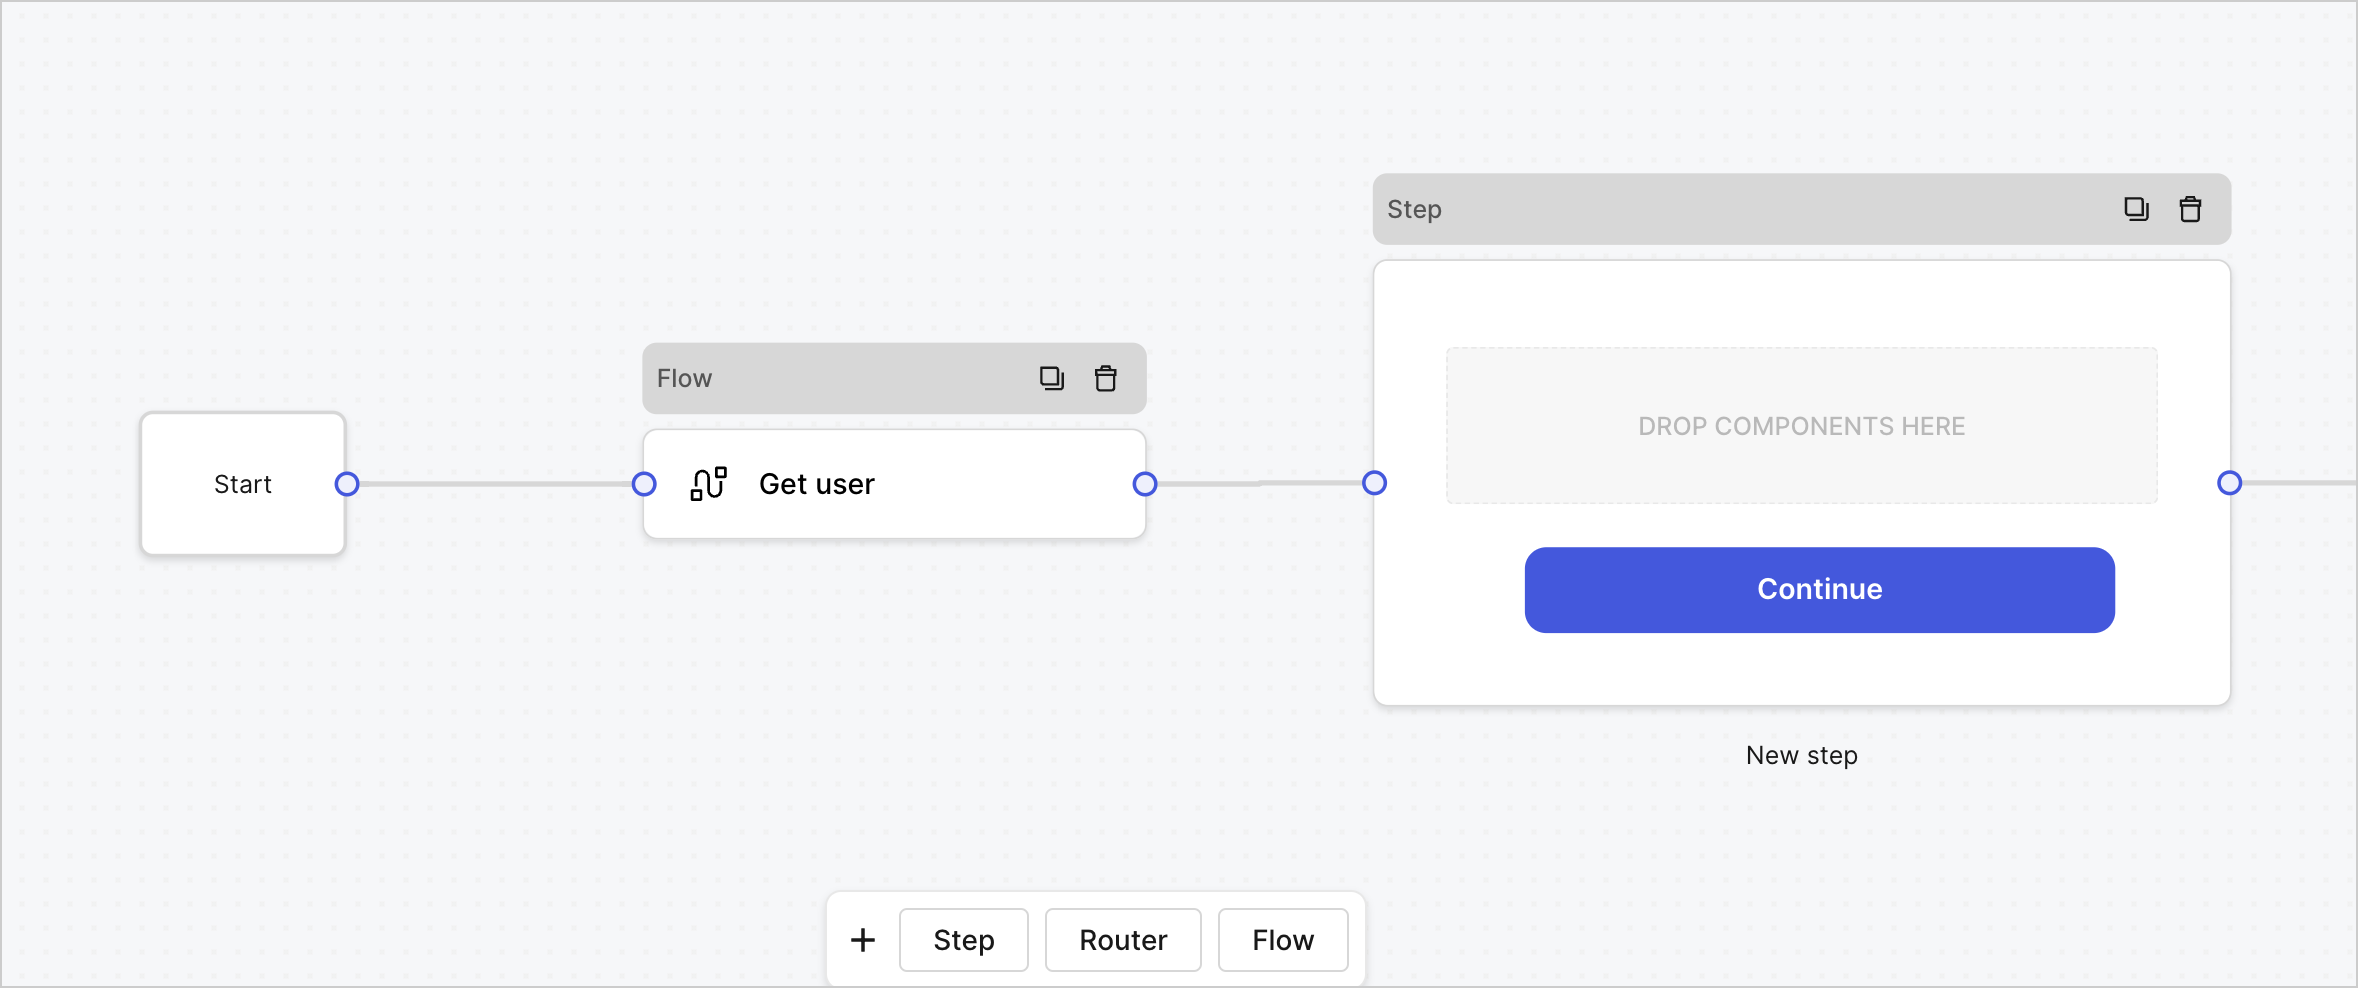 Dashboard > Forms > Use Case > Get user flow node